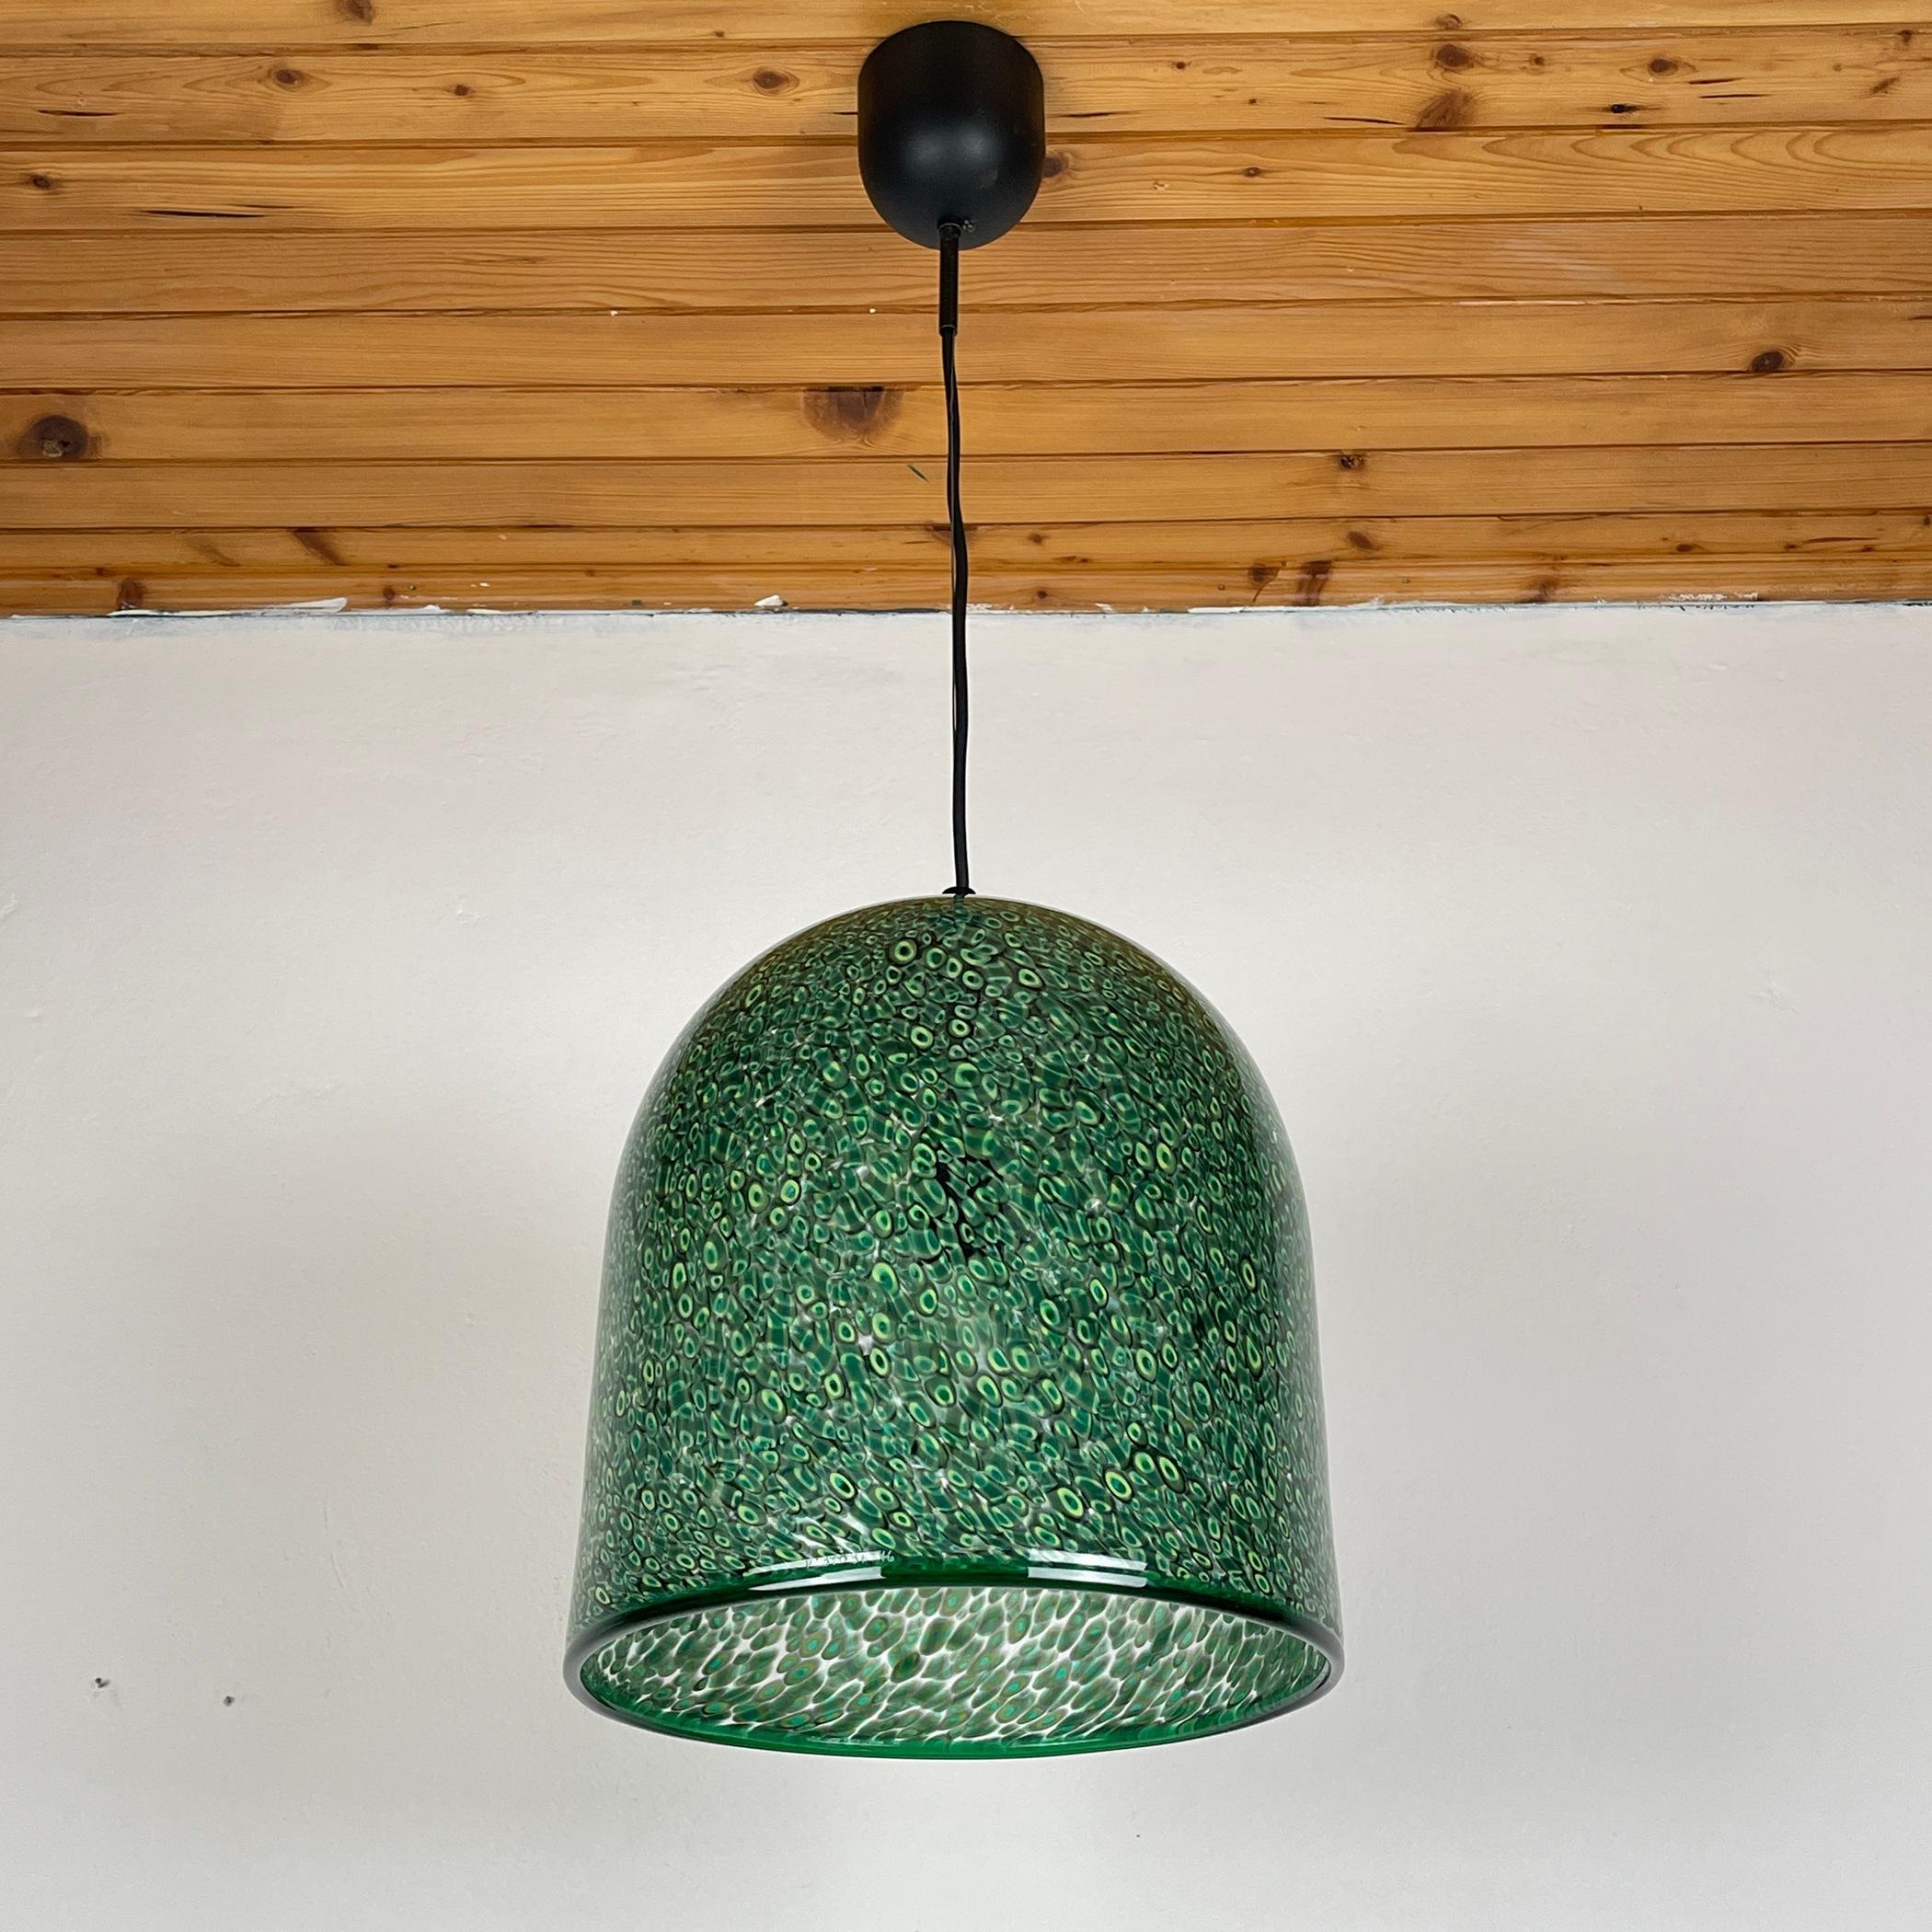  Green murano pendant lamp Neverrino by Gae Aulenti for Vistosi Italy 1976s 4